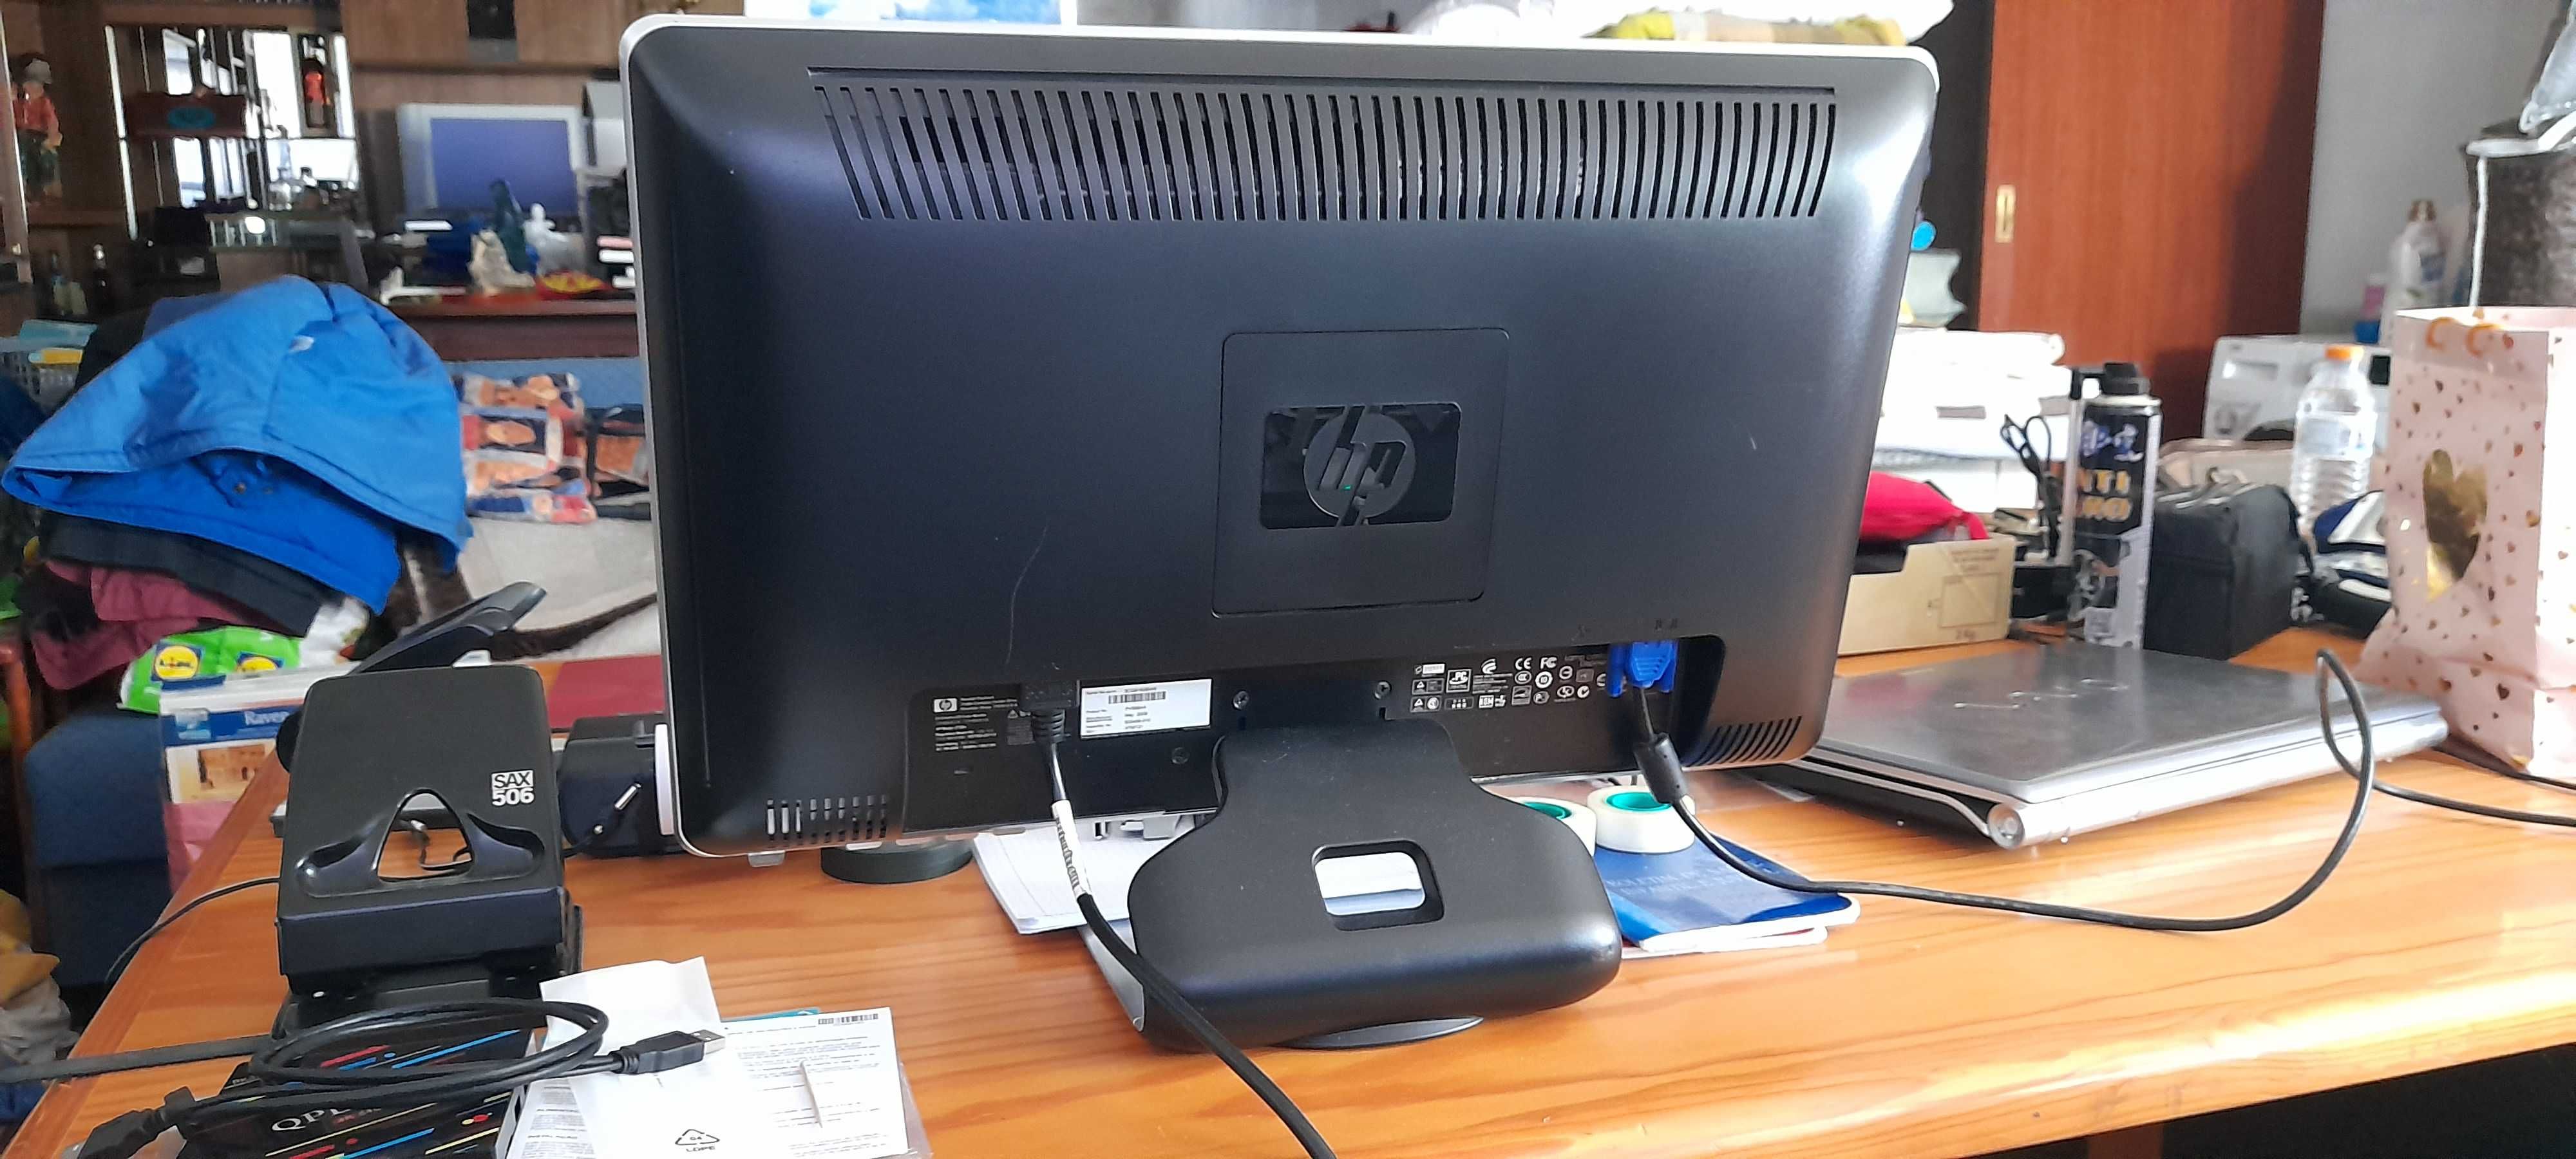 Pc Dell completo com Monitor HP 2159v